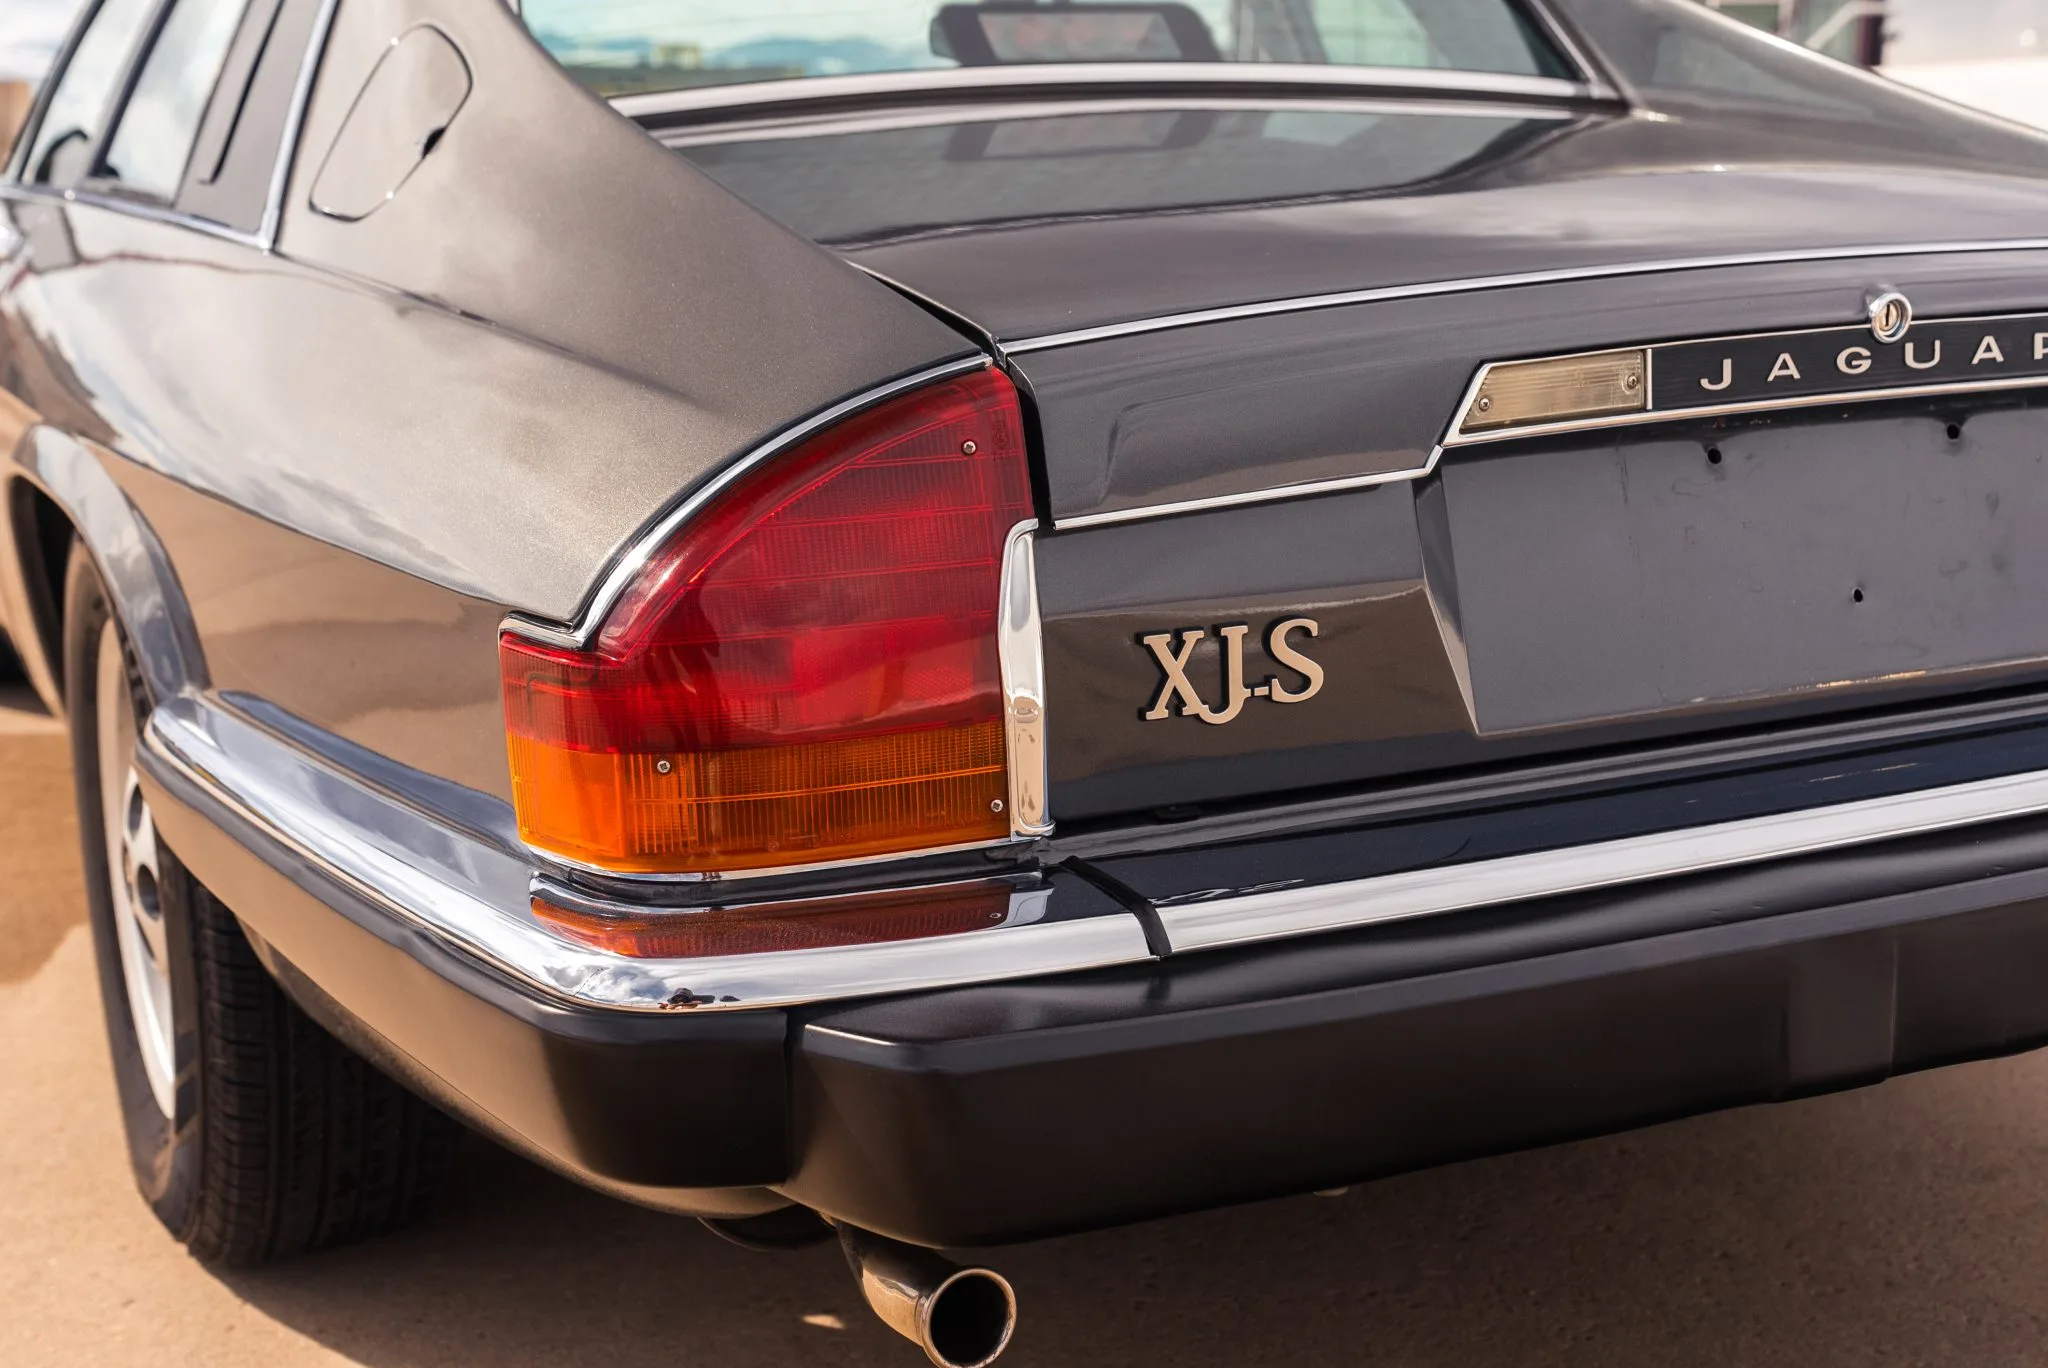 1986 Jaguar XJS V12 Coupe, Auctions, Bring A Trailer, For Sale, Jaguar, Jaguar XJS